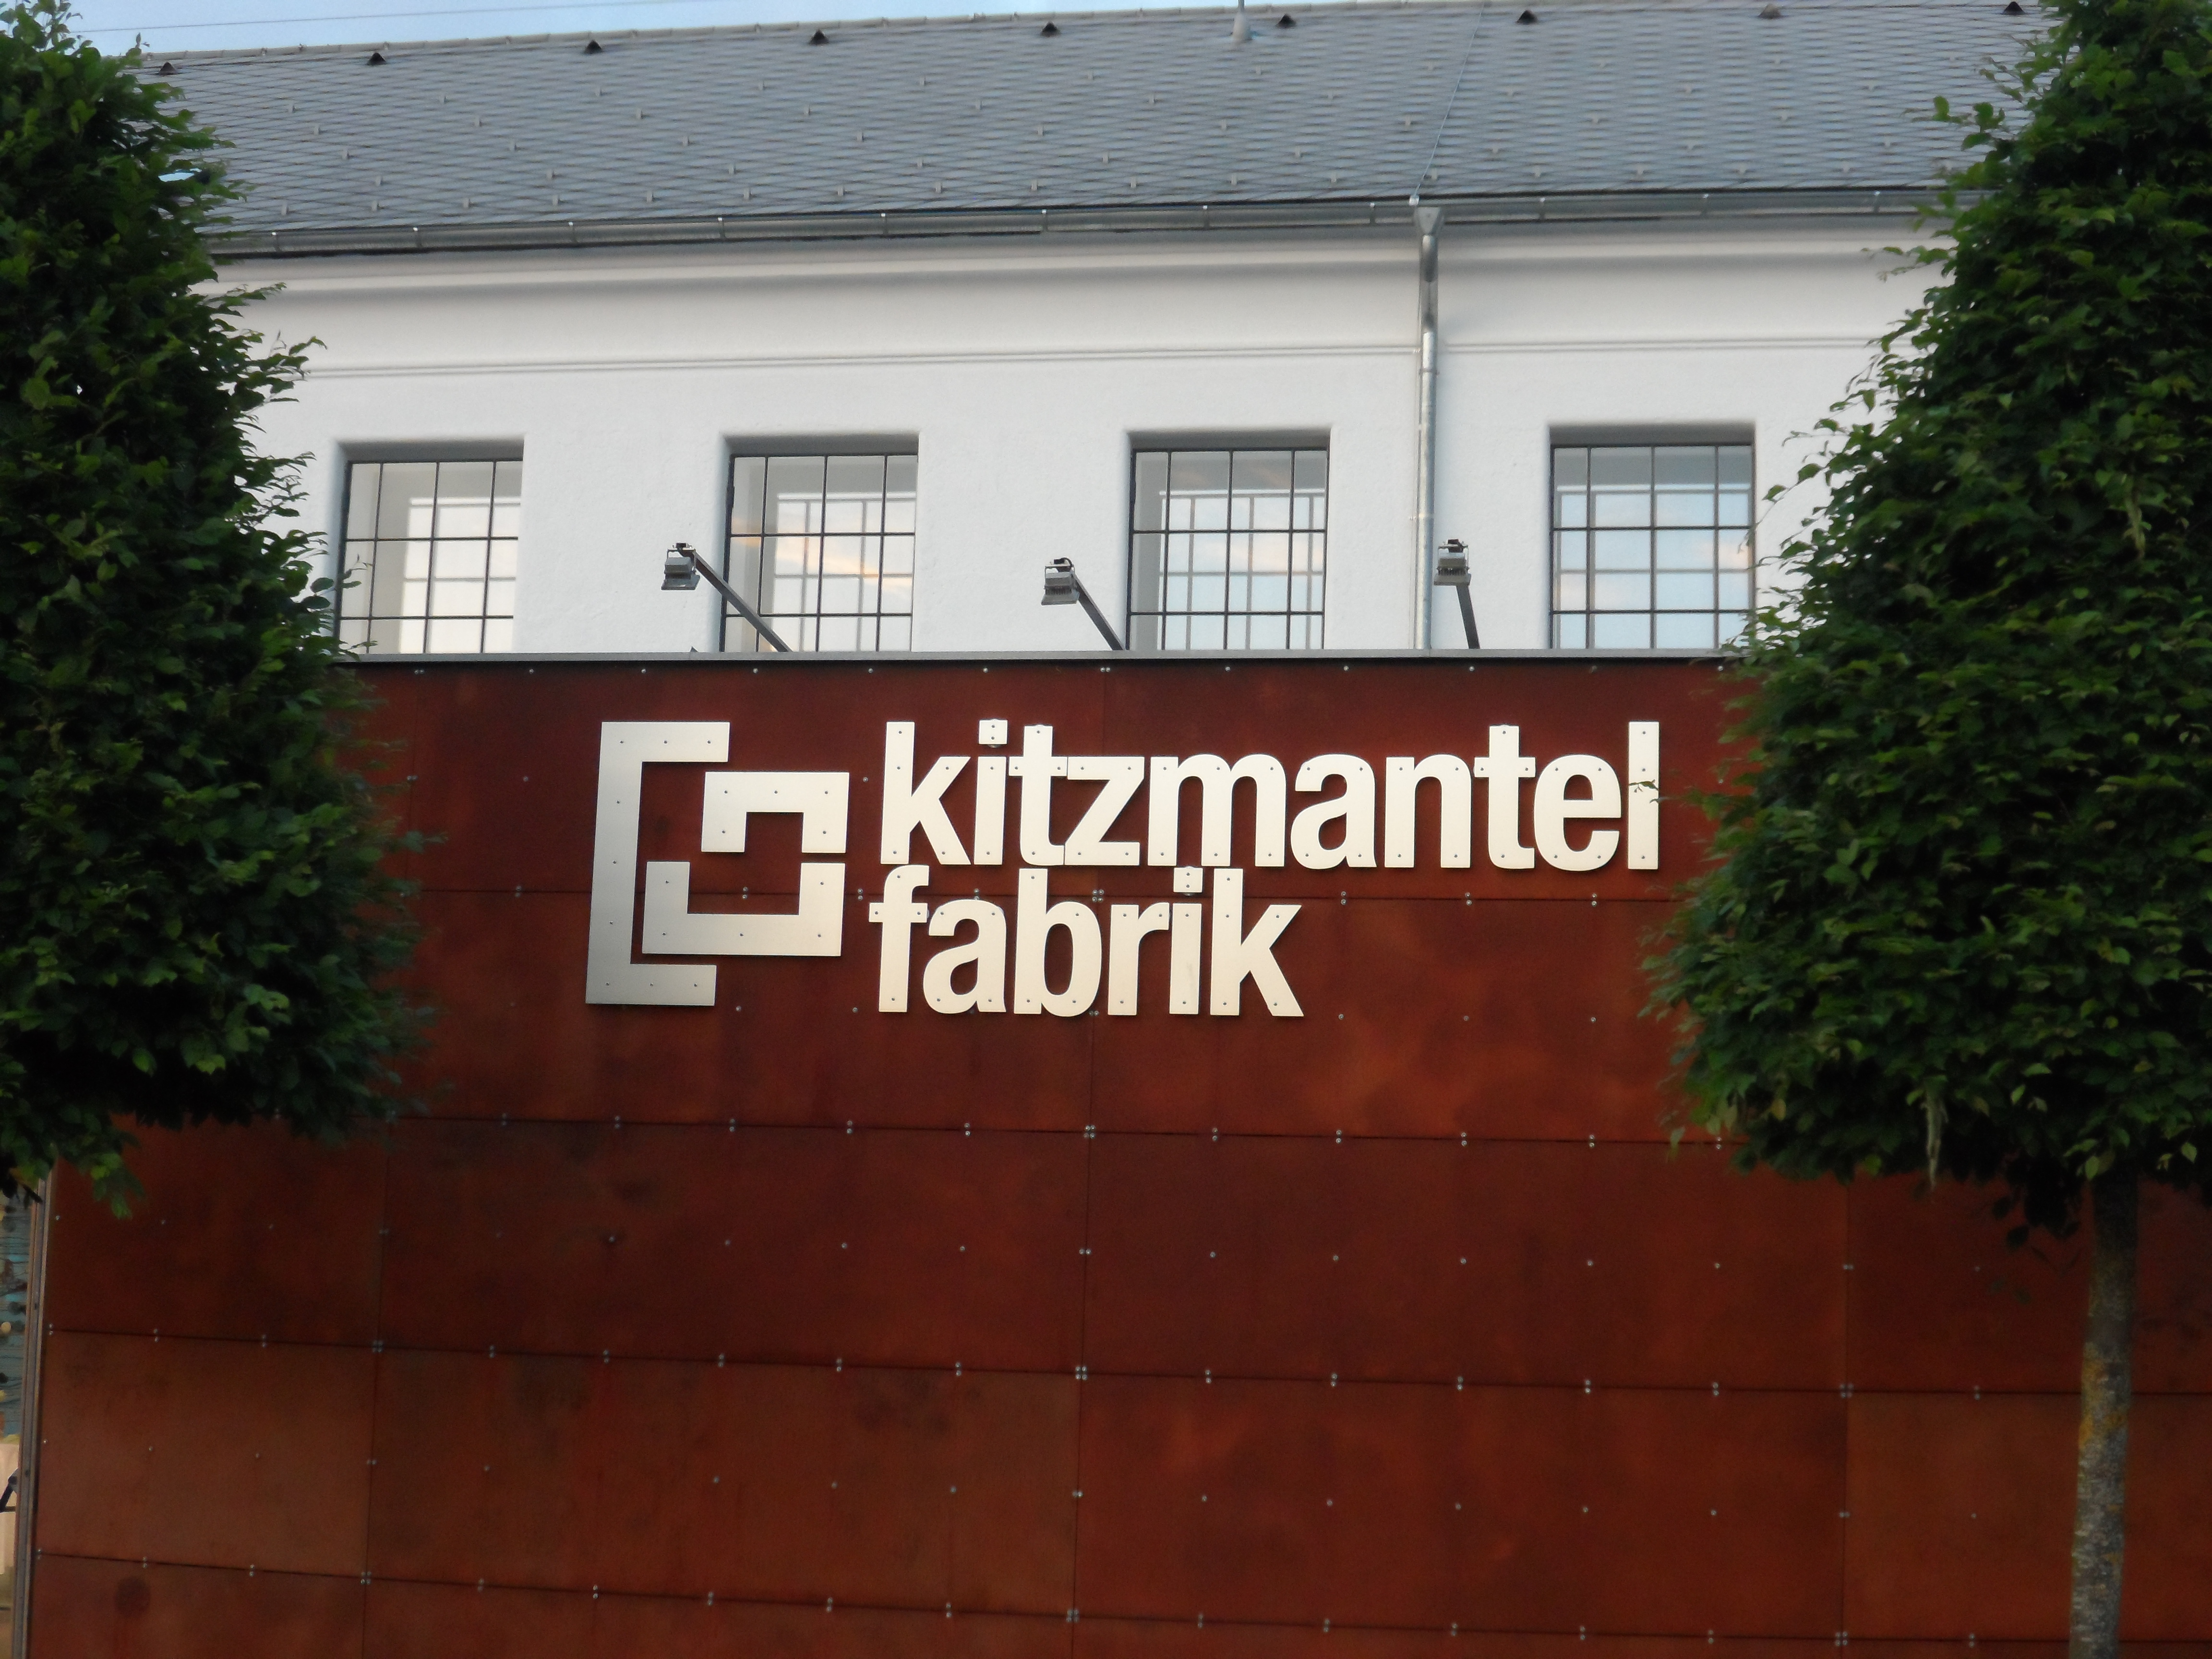 Kitzmantelfabrik in Vorchdorf